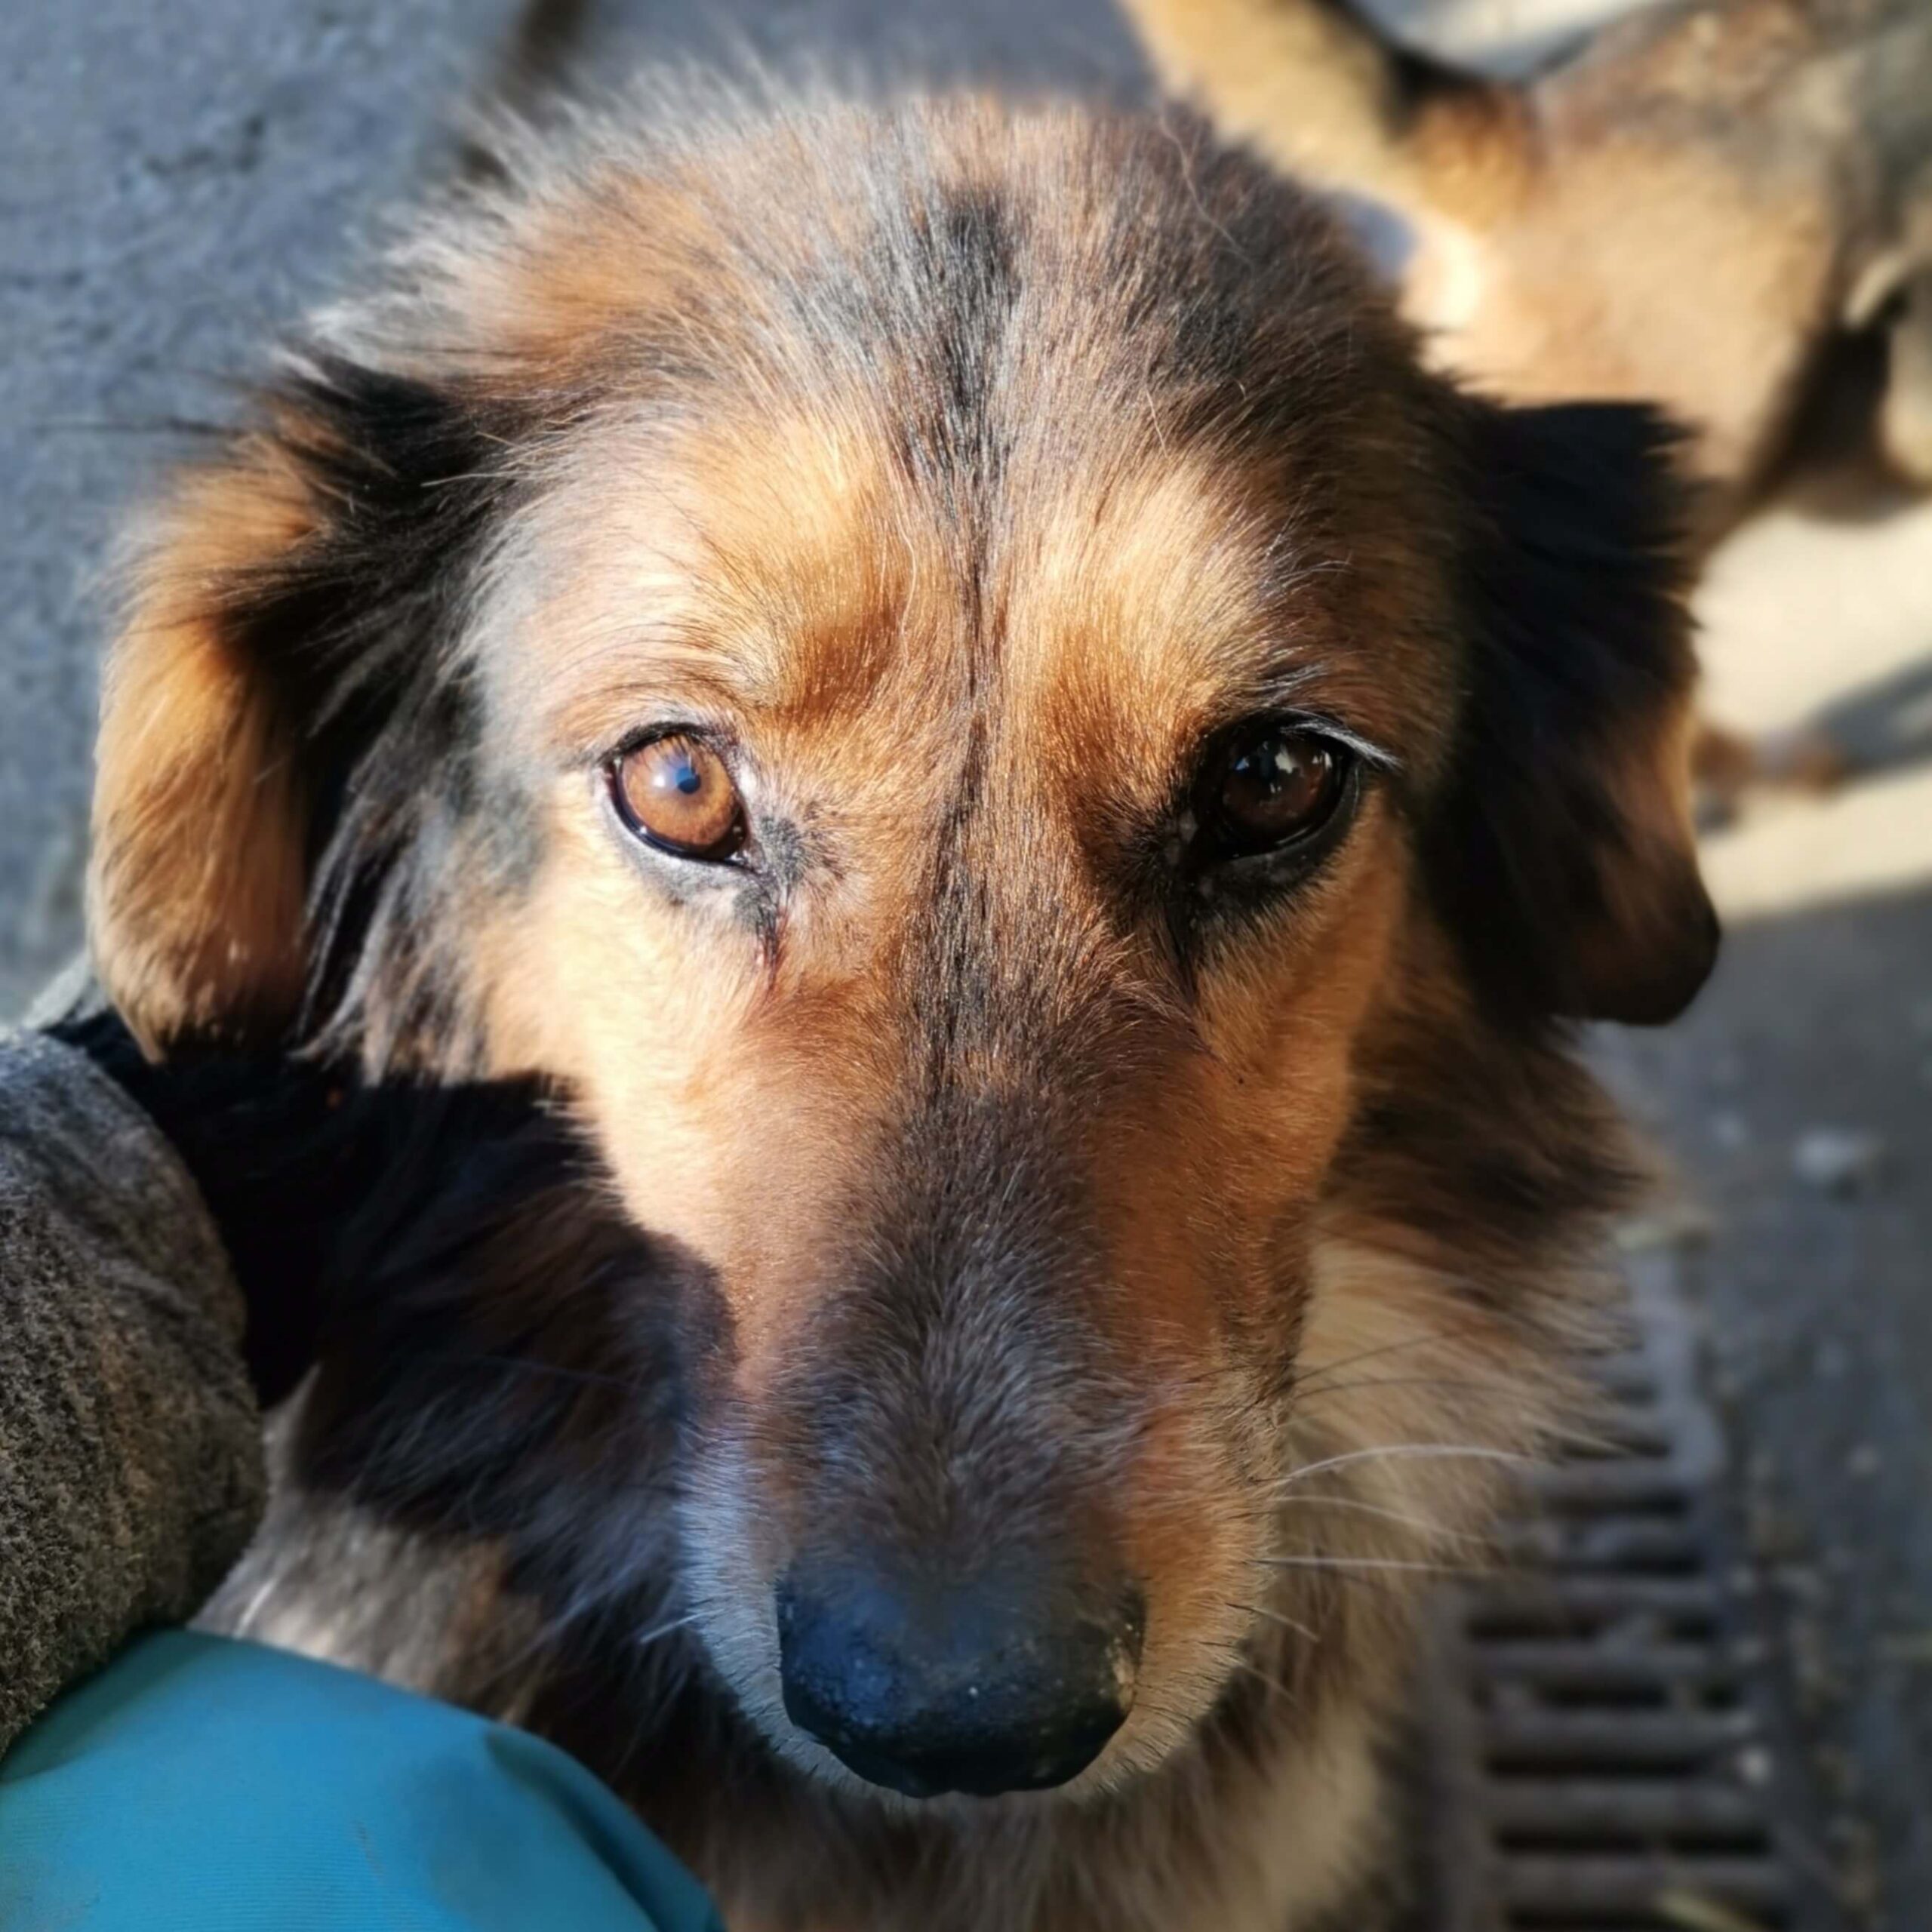 Lela - Shelter Dogs Adoption - Srce za sapu - Bosnia